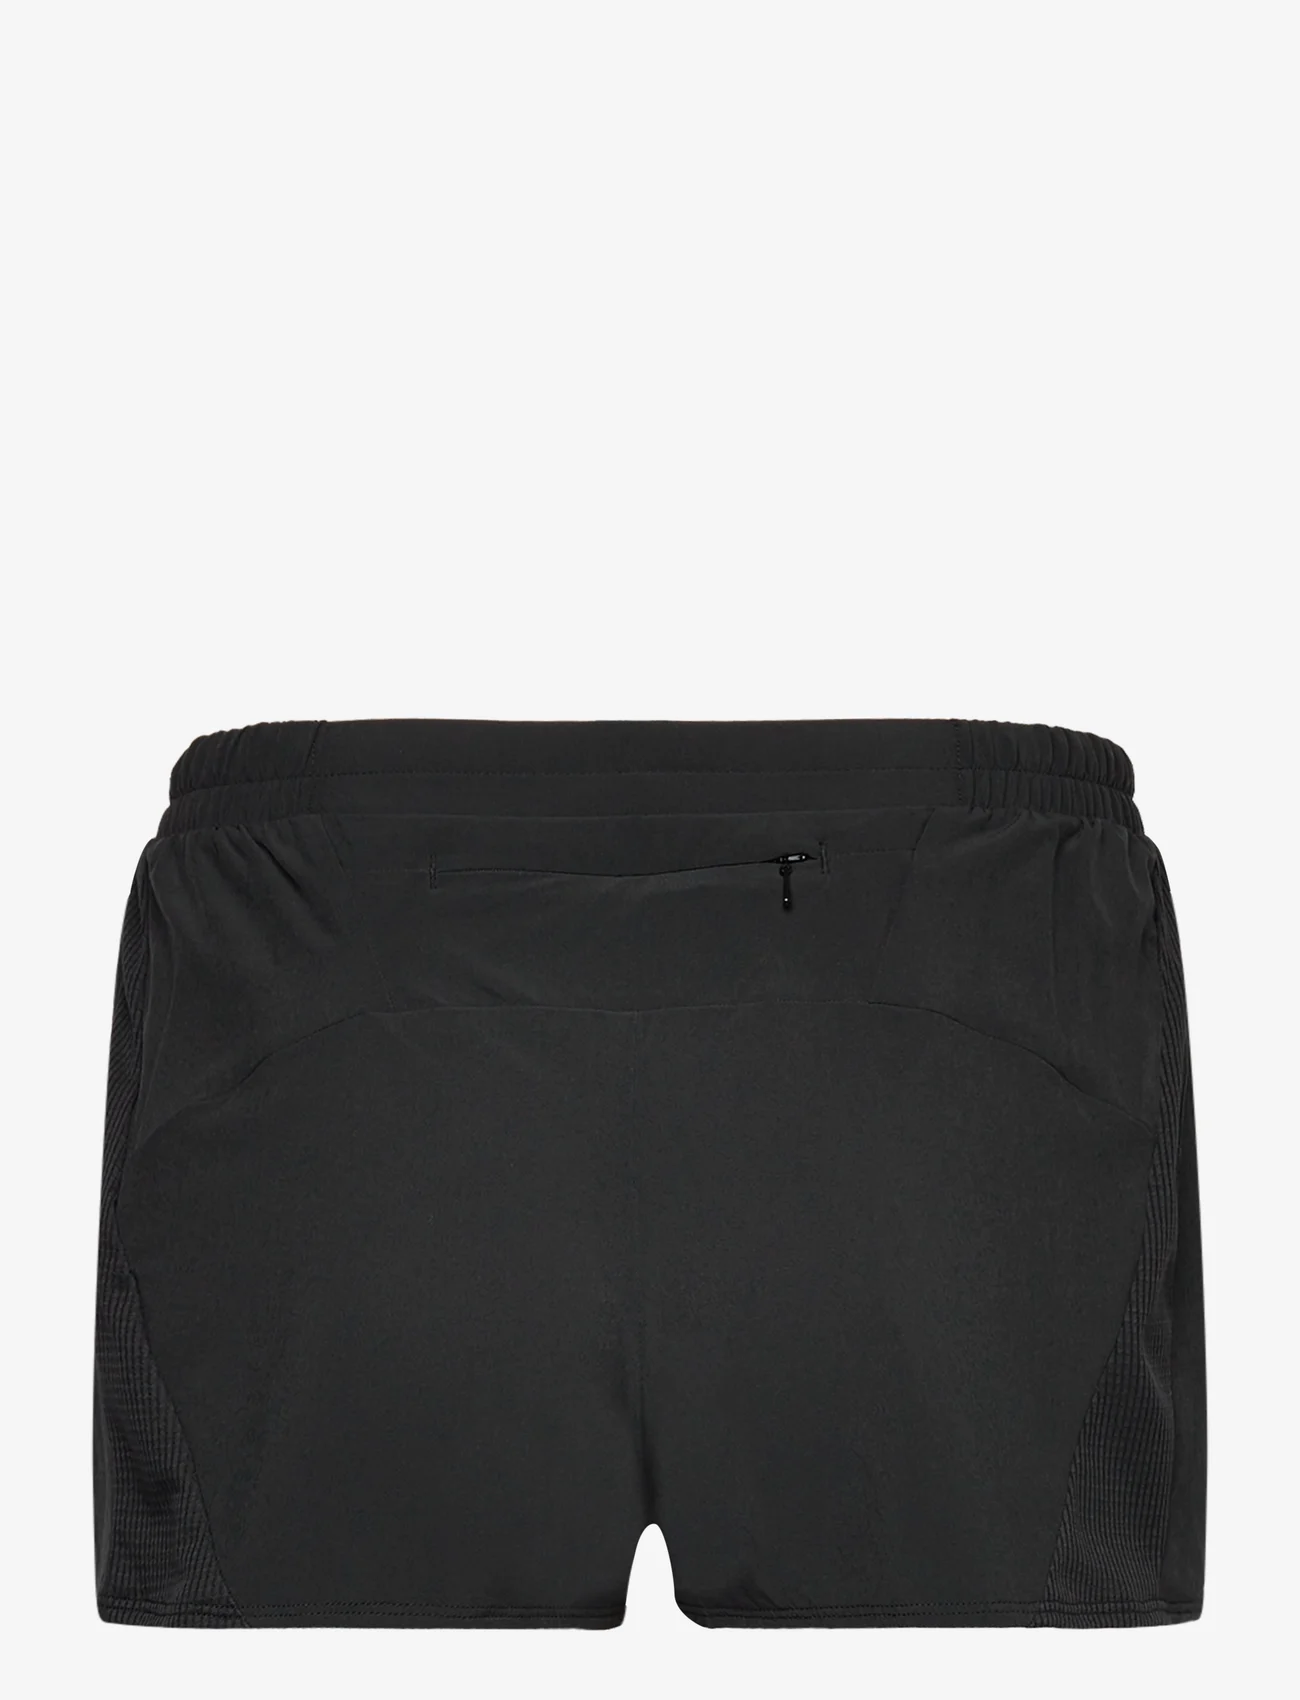 Mizuno - Aero 2.5  Short(W) - sports shorts - black - 1